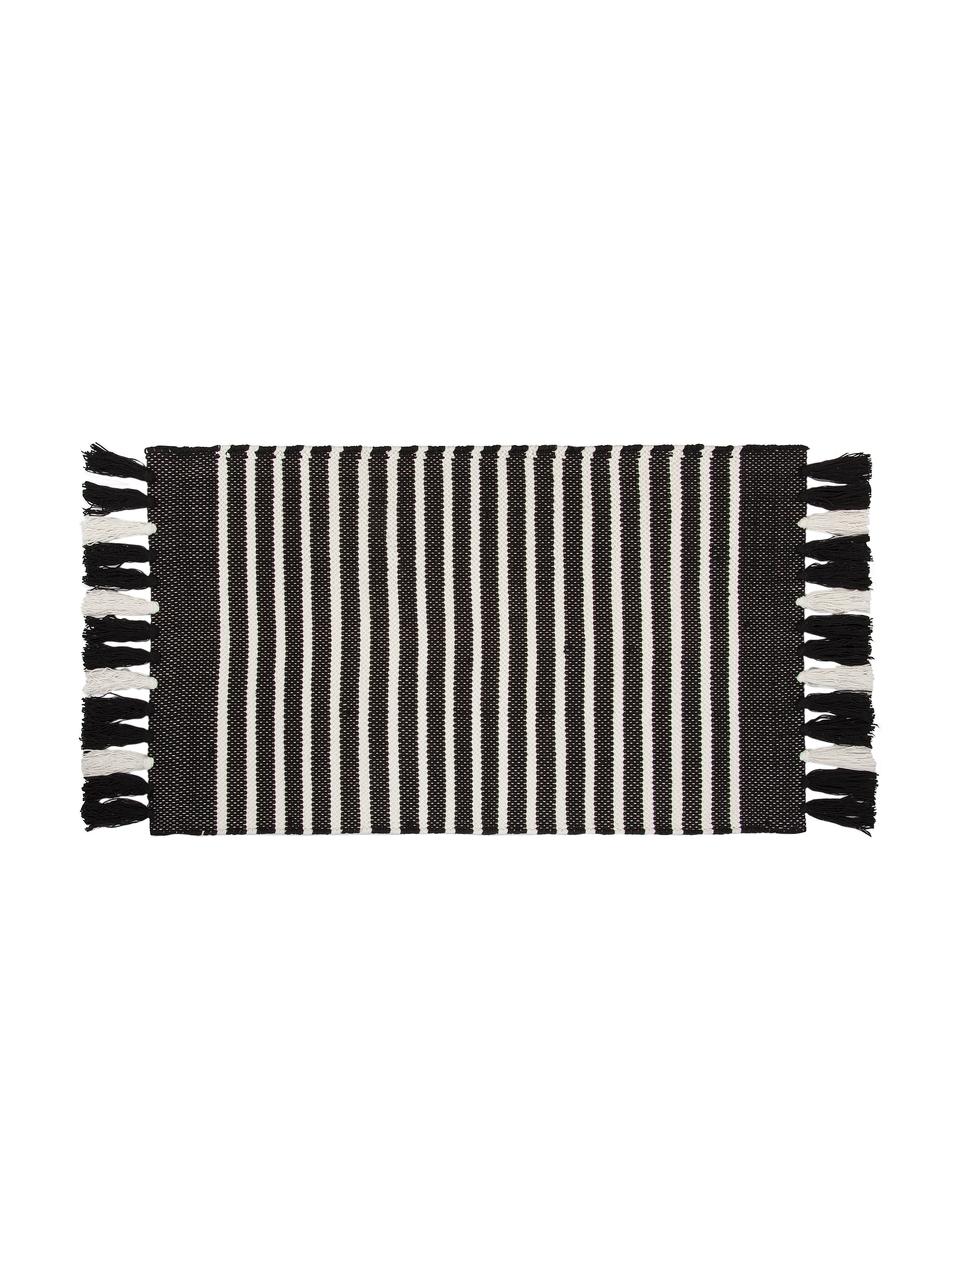 Tappeto bagno con frange Stripes & Structure, 100% cotone, Antracite, bianco latteo, Larg. 60 x Lung. 100 cm